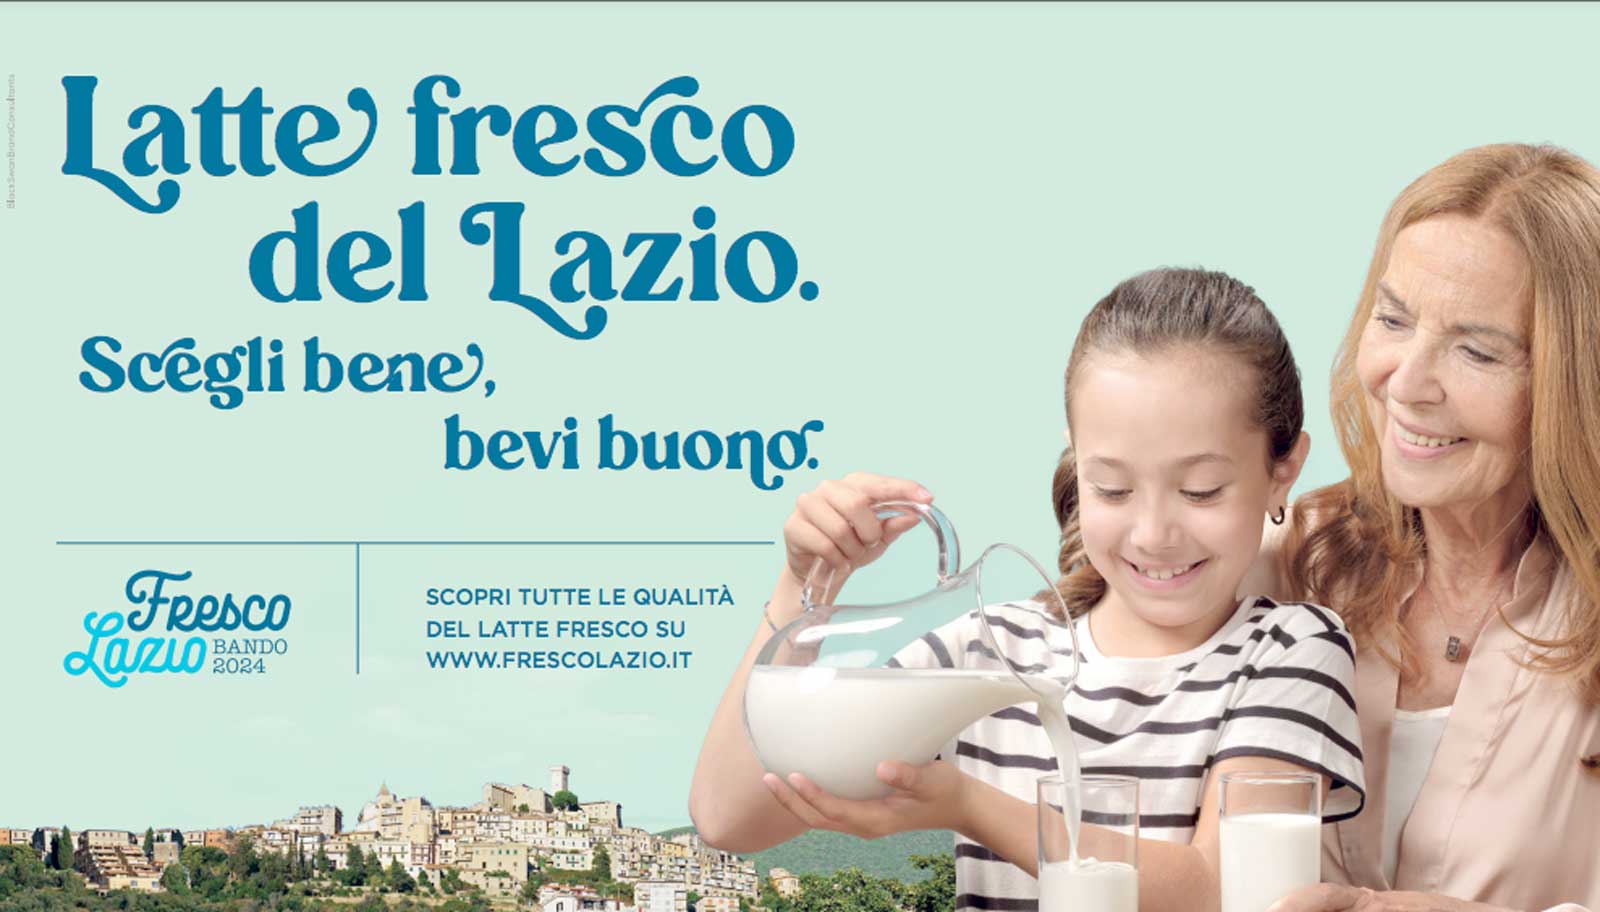 La locandina della Regione sulla promozione del latte fresco prodotto nel Lazio